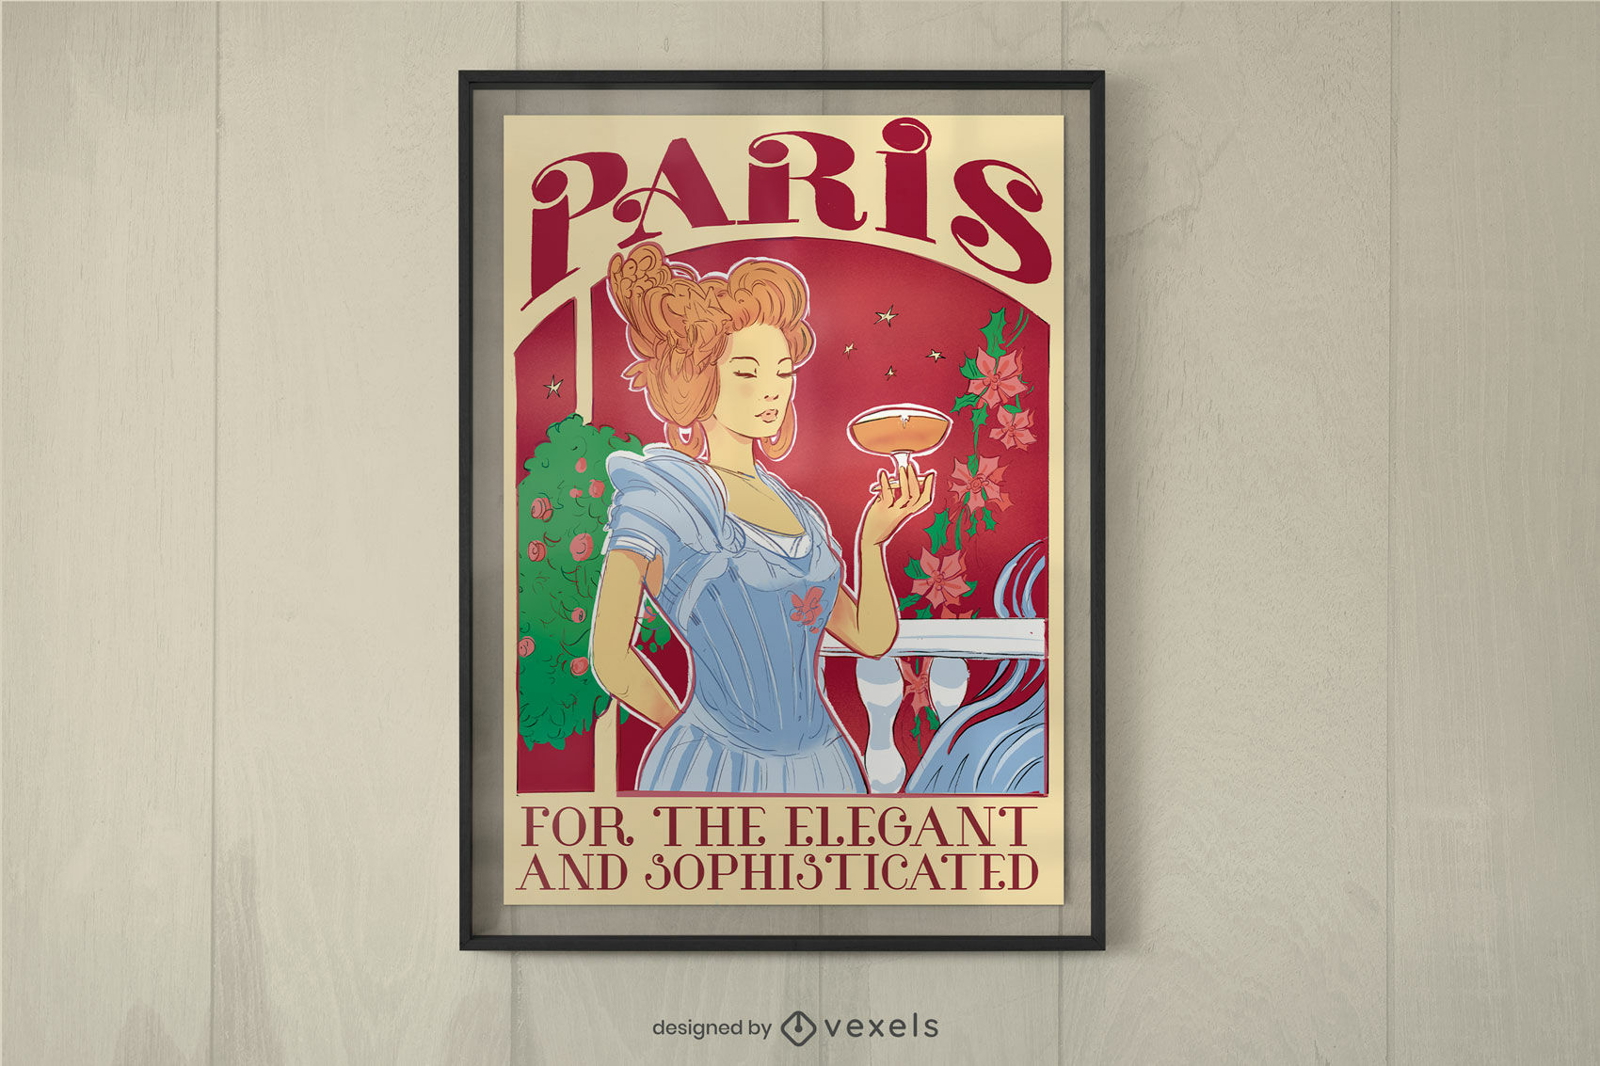 Vintage Paris poster design